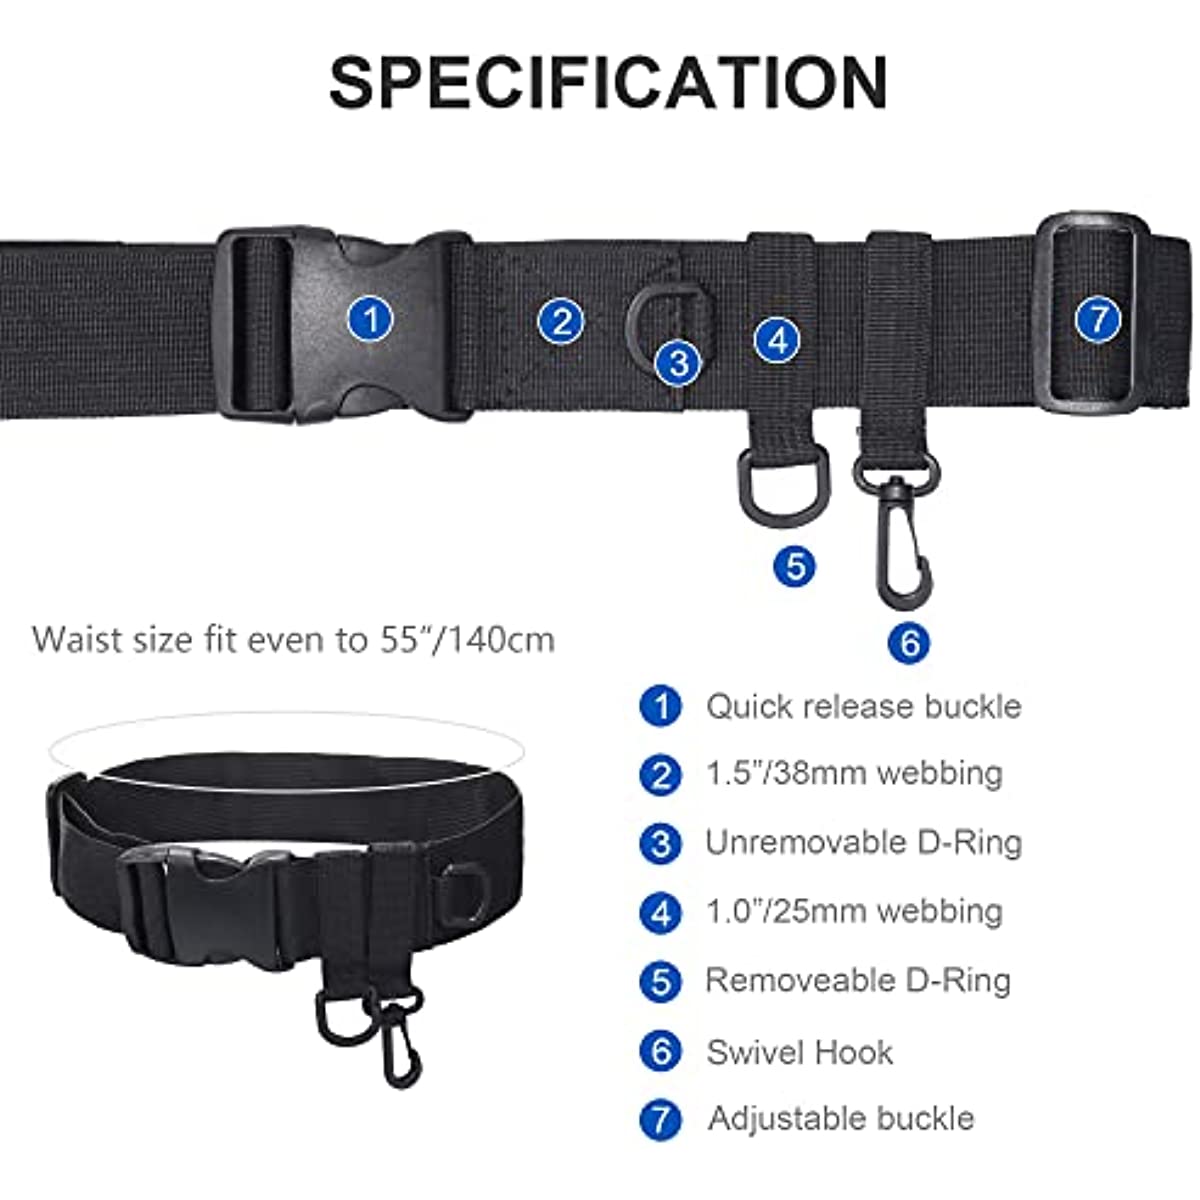 Fishing Rod Holder Belt Adjustable Accessories Waist Belt Fishing Vest Set  